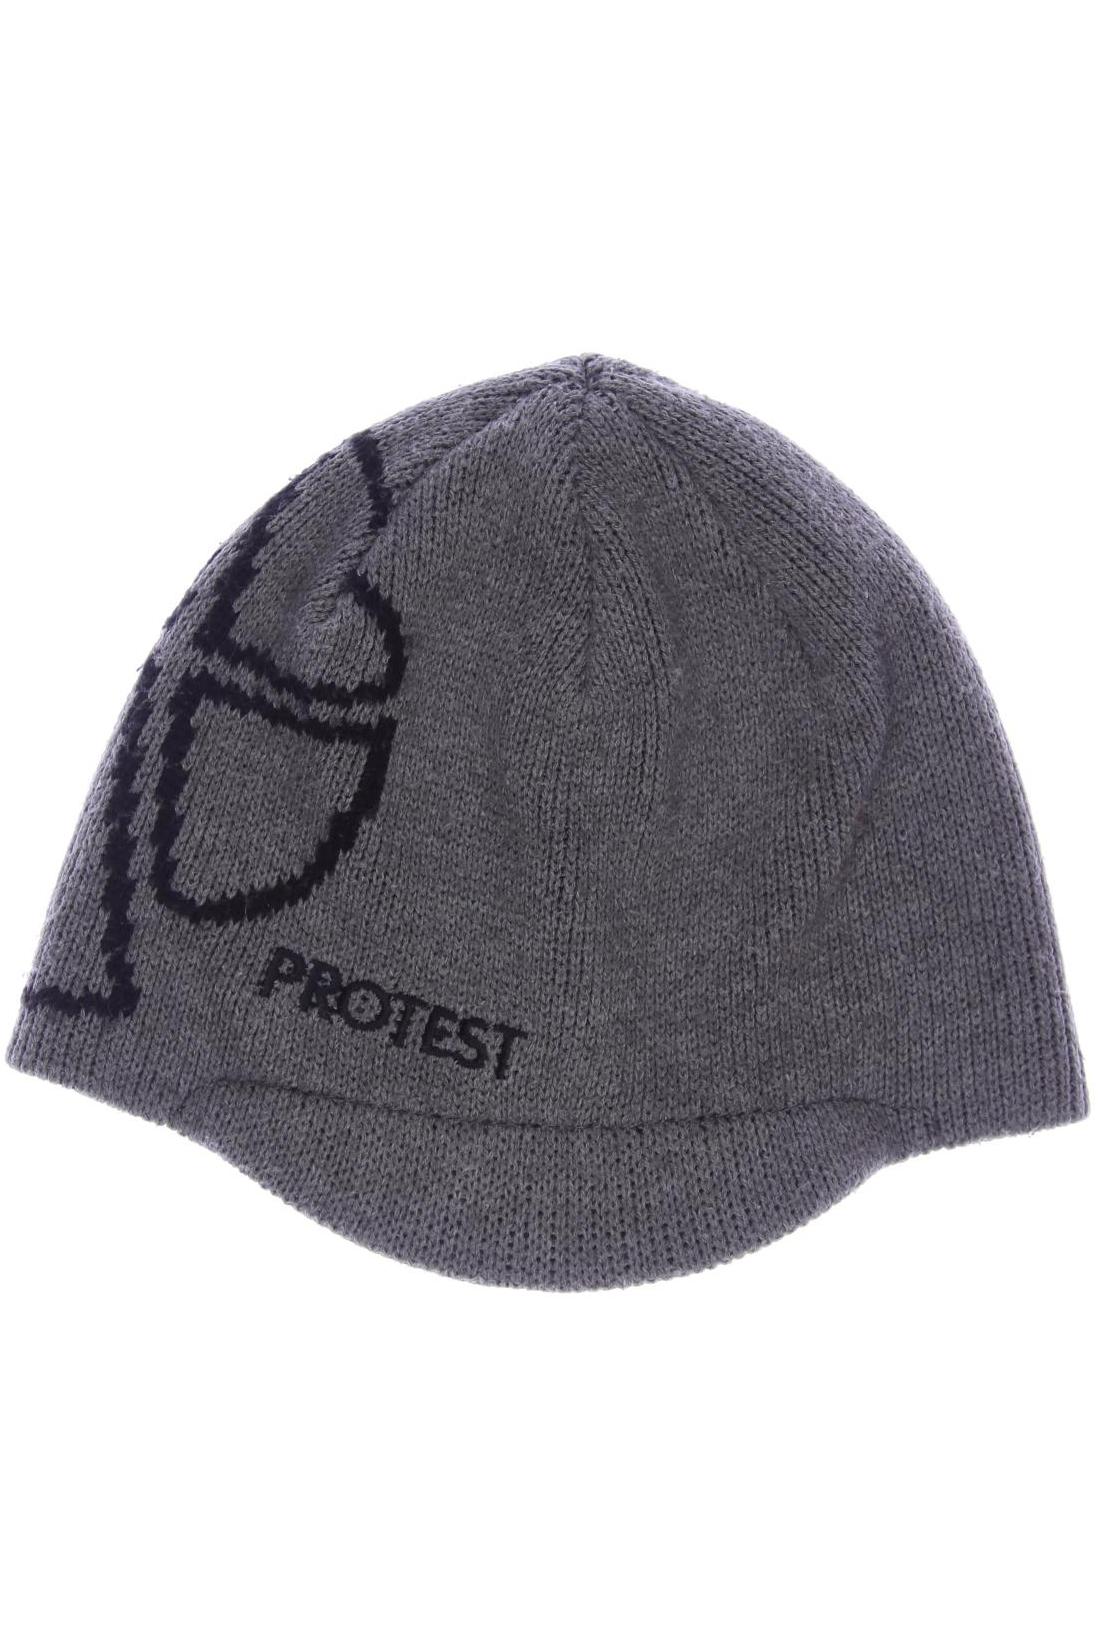 Protest Jungen Hut/Mütze, grau von Protest